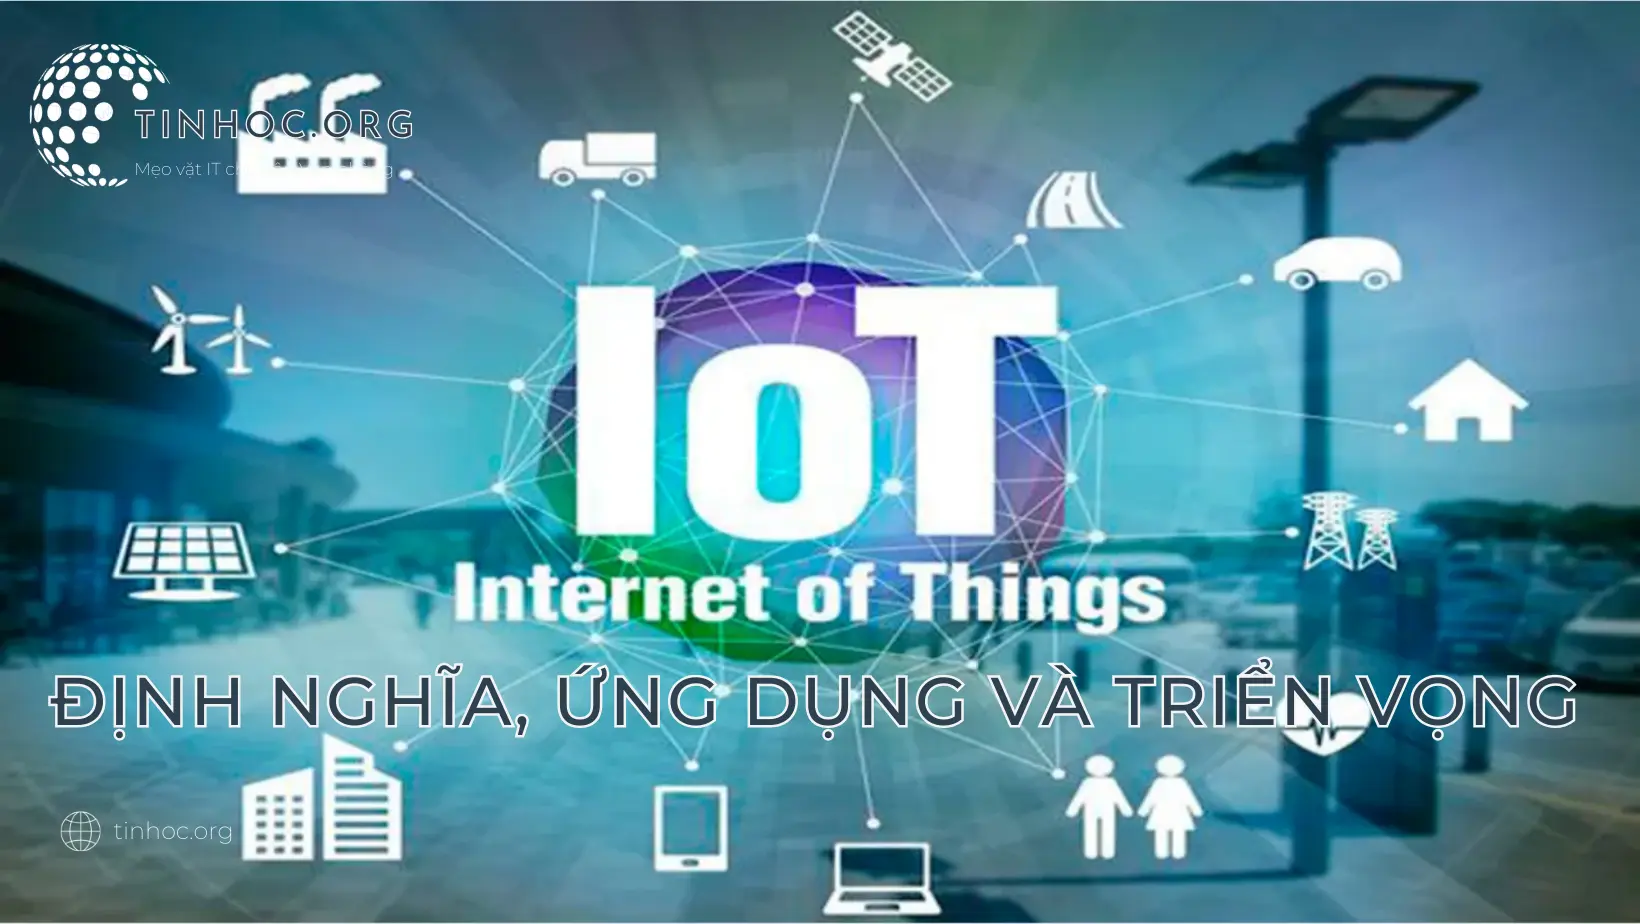 Internet of Things (IoT) là một hệ thống các thiết bị và đối tượng vật lý được kết nối qua internet.